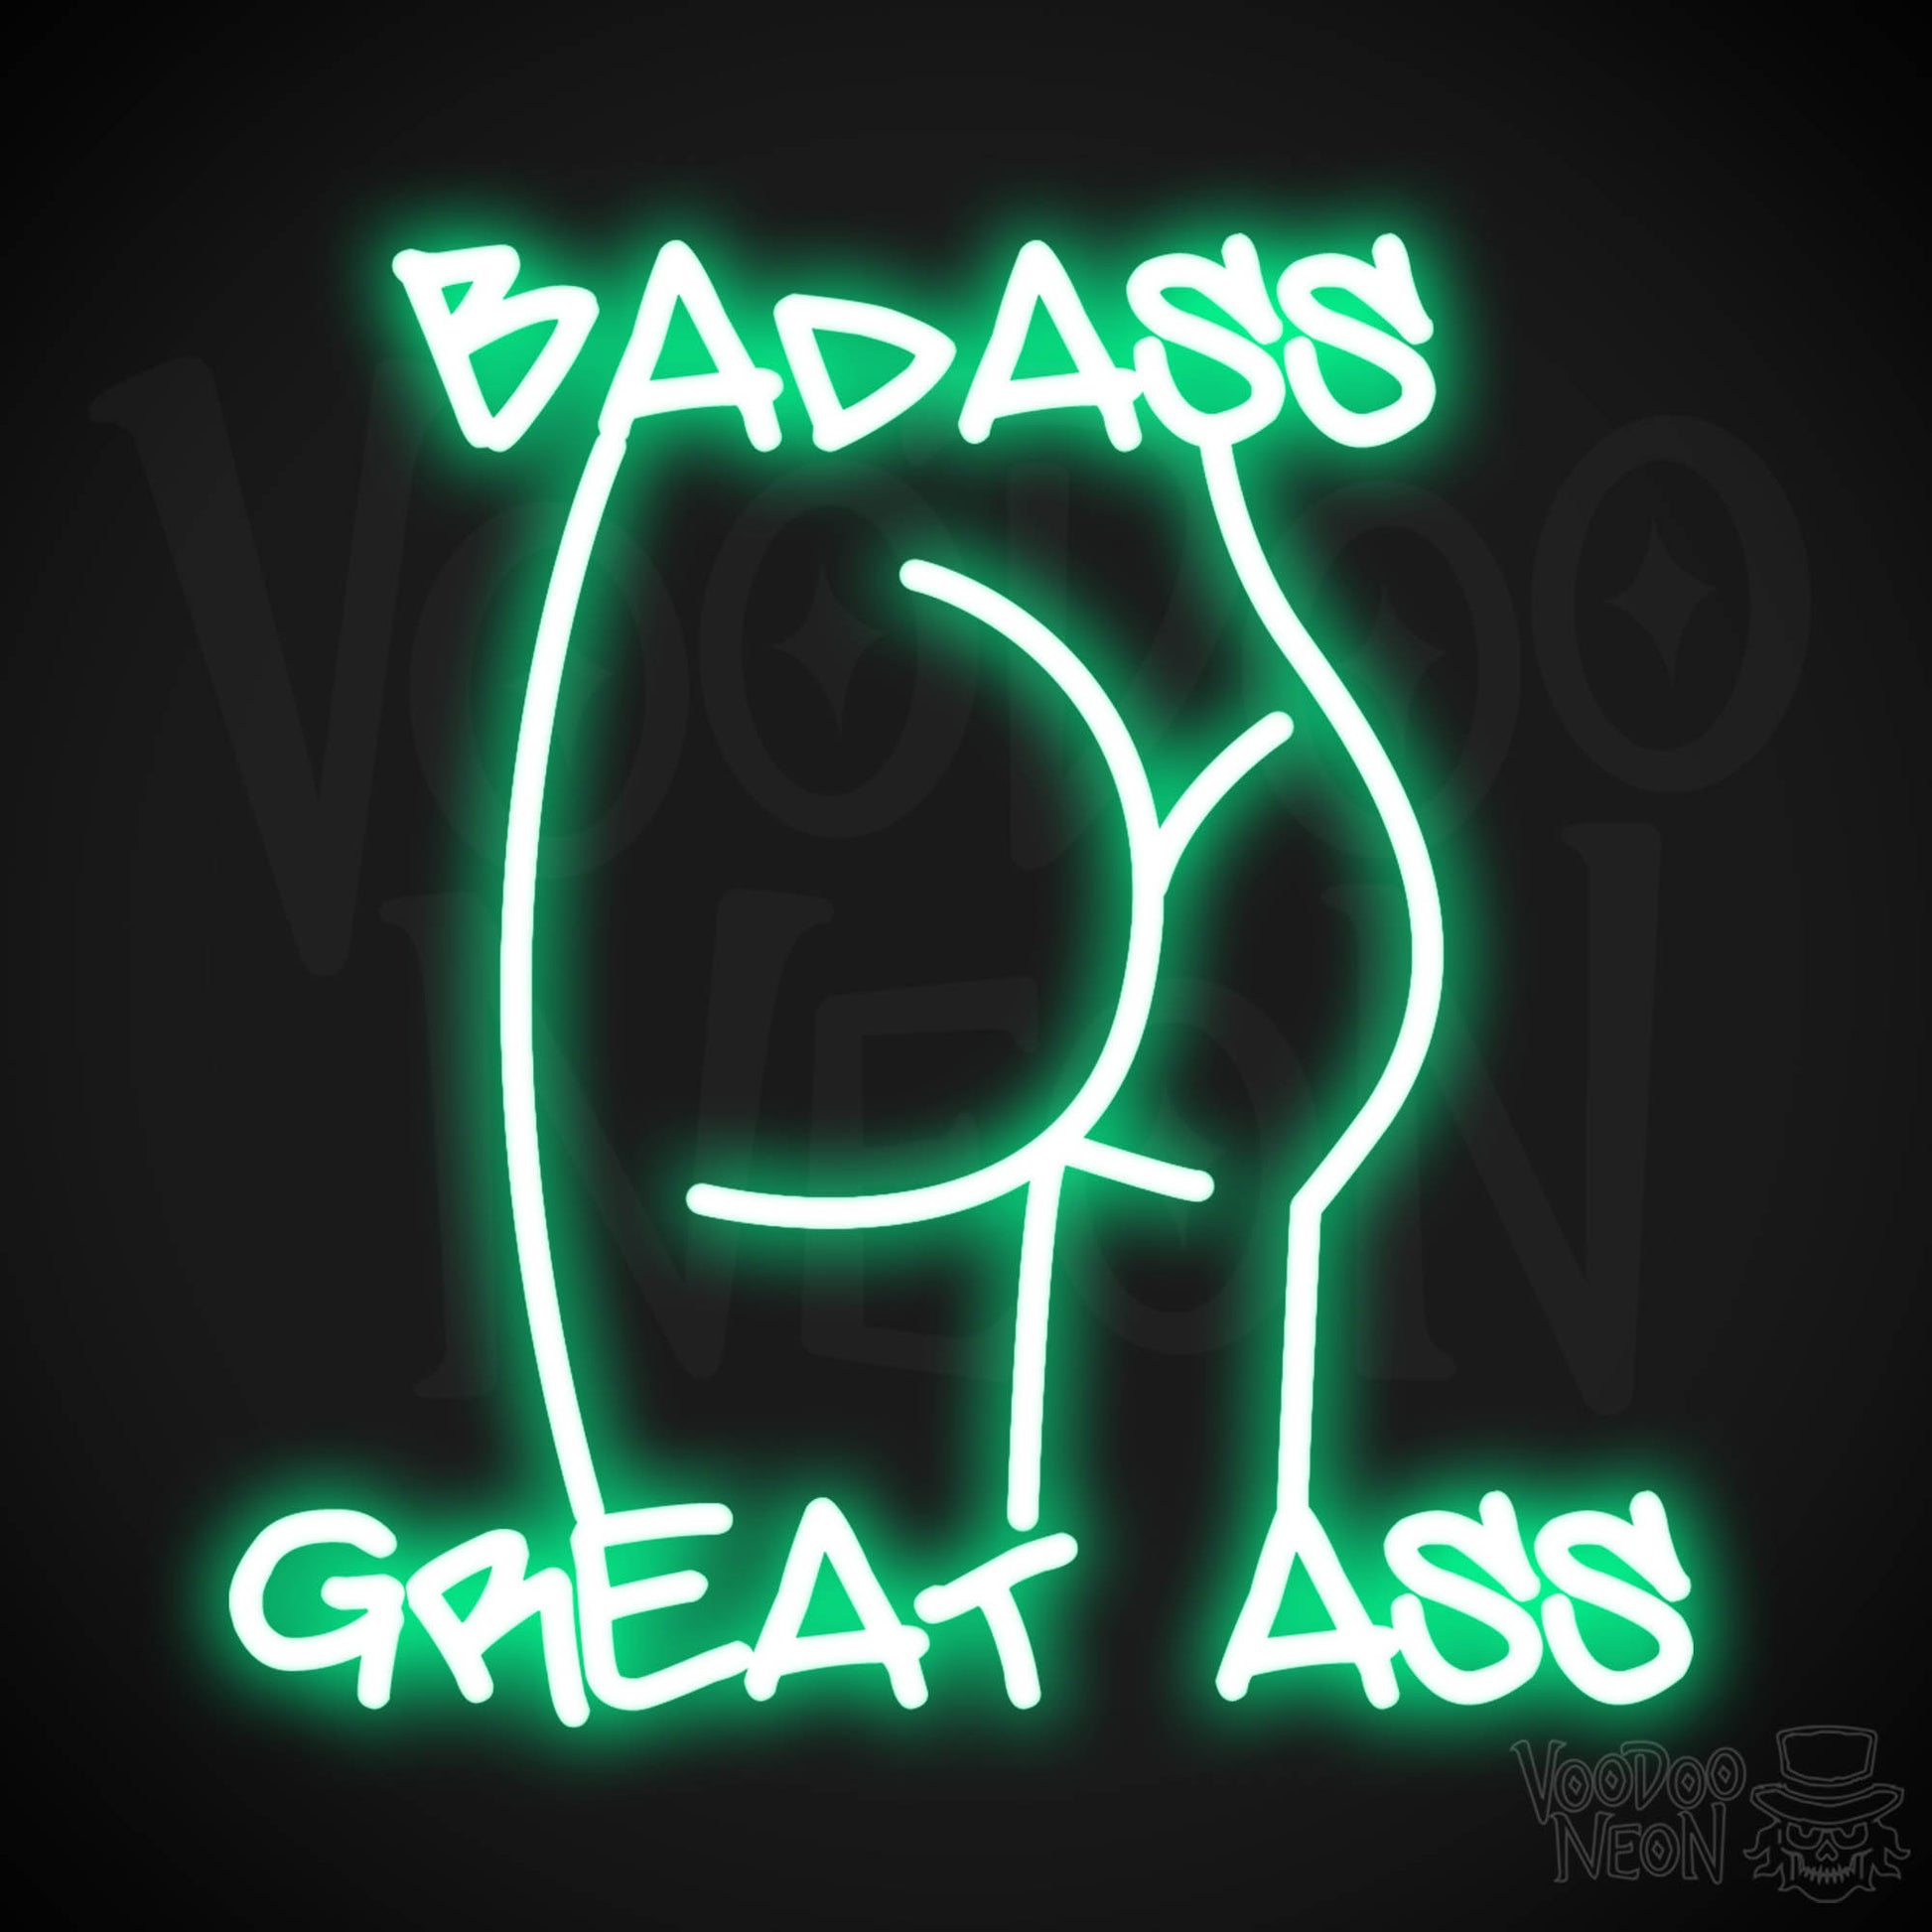 Badass Great Ass Neon Sign - Neon Badass Great Ass Sign - LED Sign - Color Green